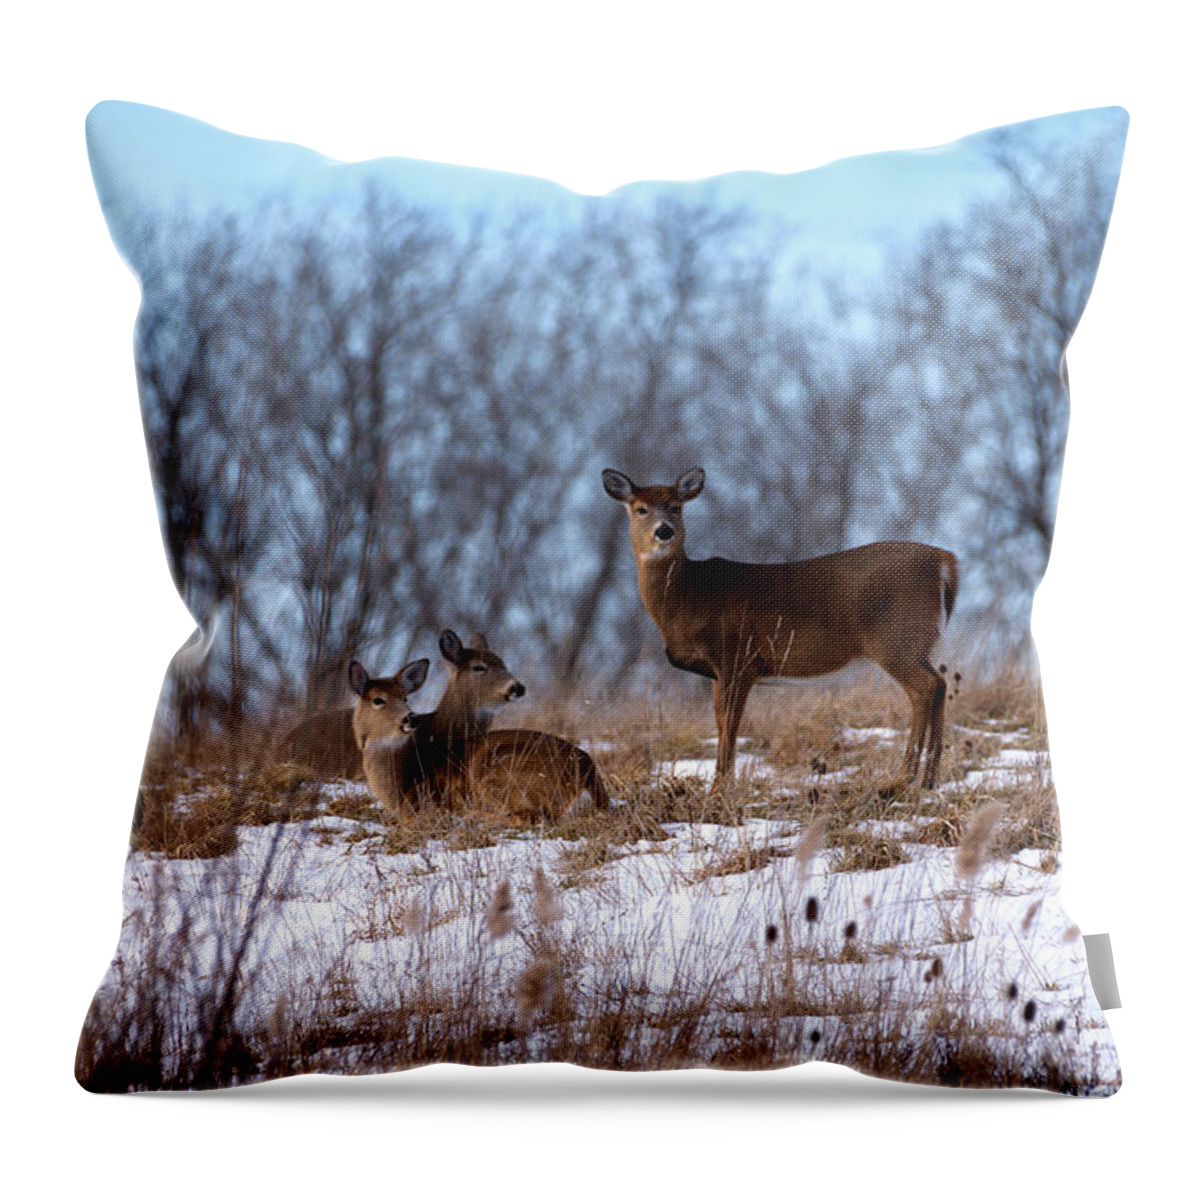 Deer Throw Pillow featuring the photograph Deer Resting by Flinn Hackett